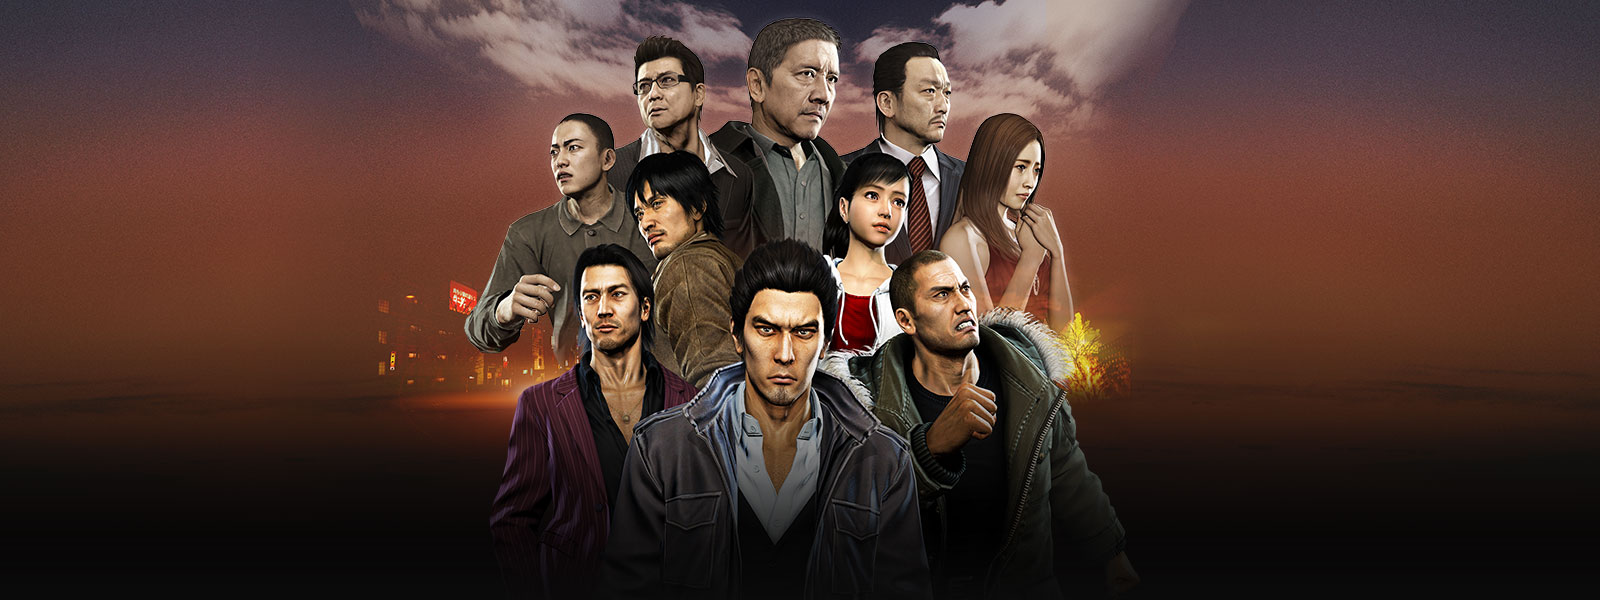 Kazuma Kiryu devant un collage du clan Tojo et les personnages de l’Alliance Omi au-dessus d’une scène urbaine brumeuse.